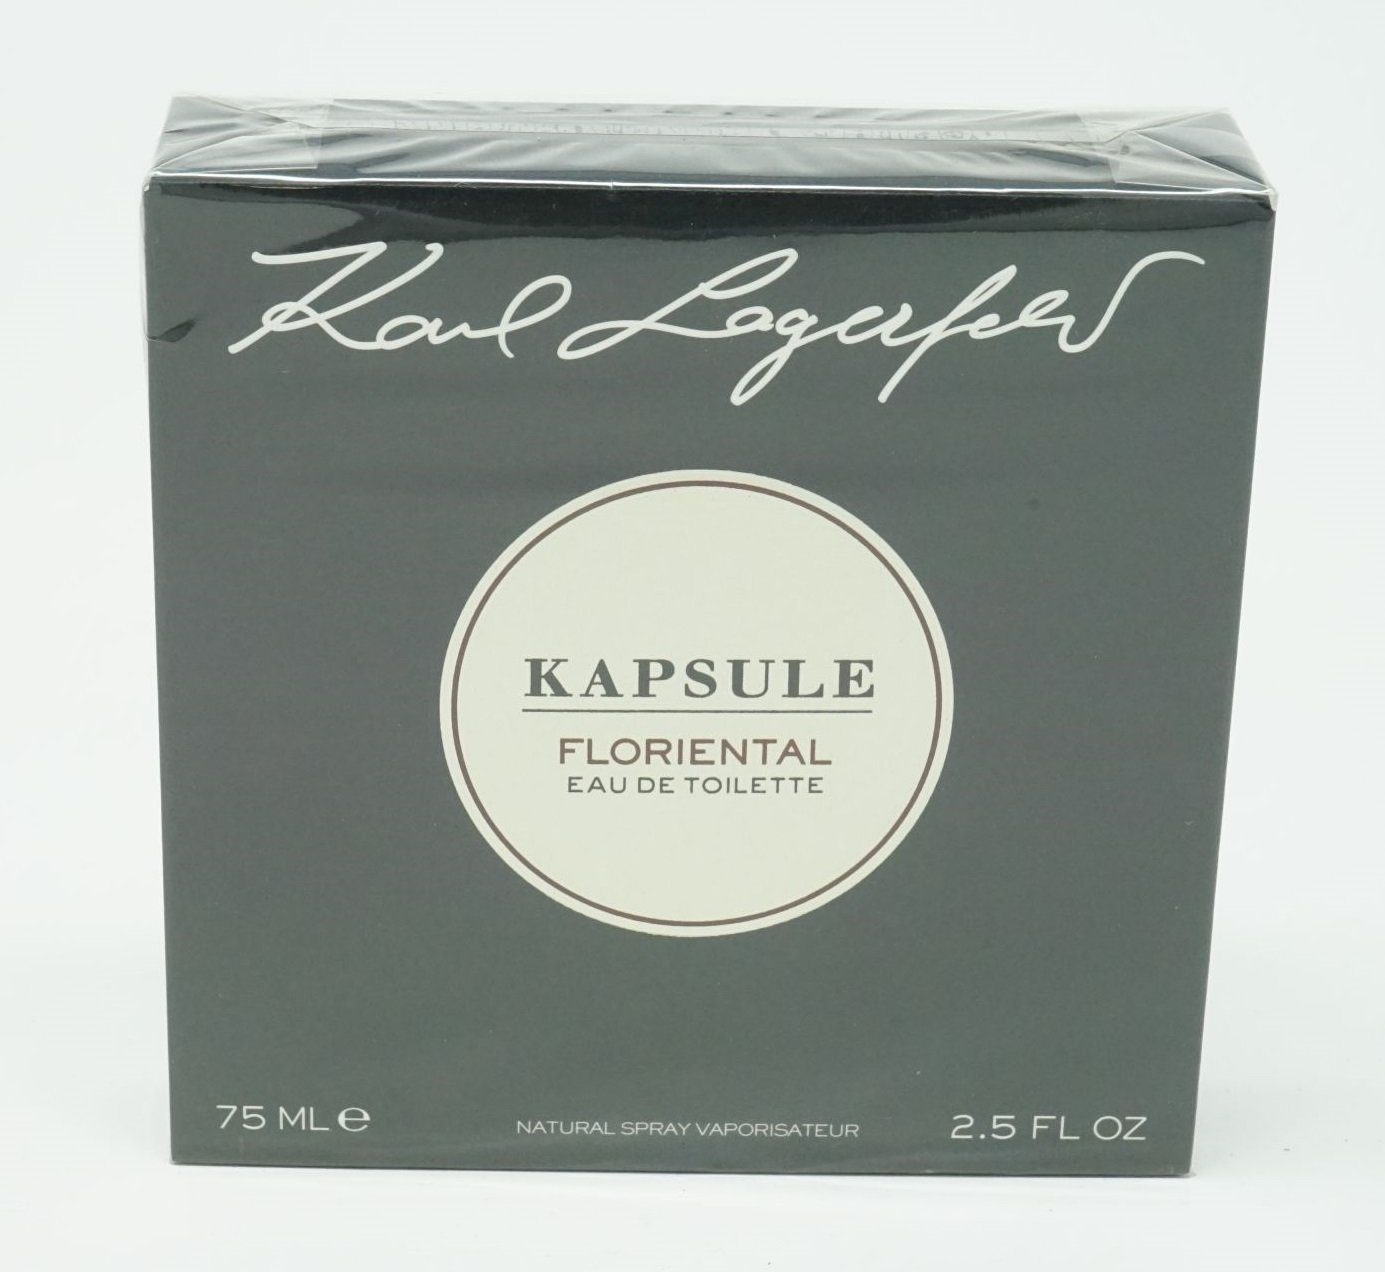 LAGERFELD Eau de Toilette Karl Lagerfeld Kapsule Floriental Eau de Toilette Spray 75 ml